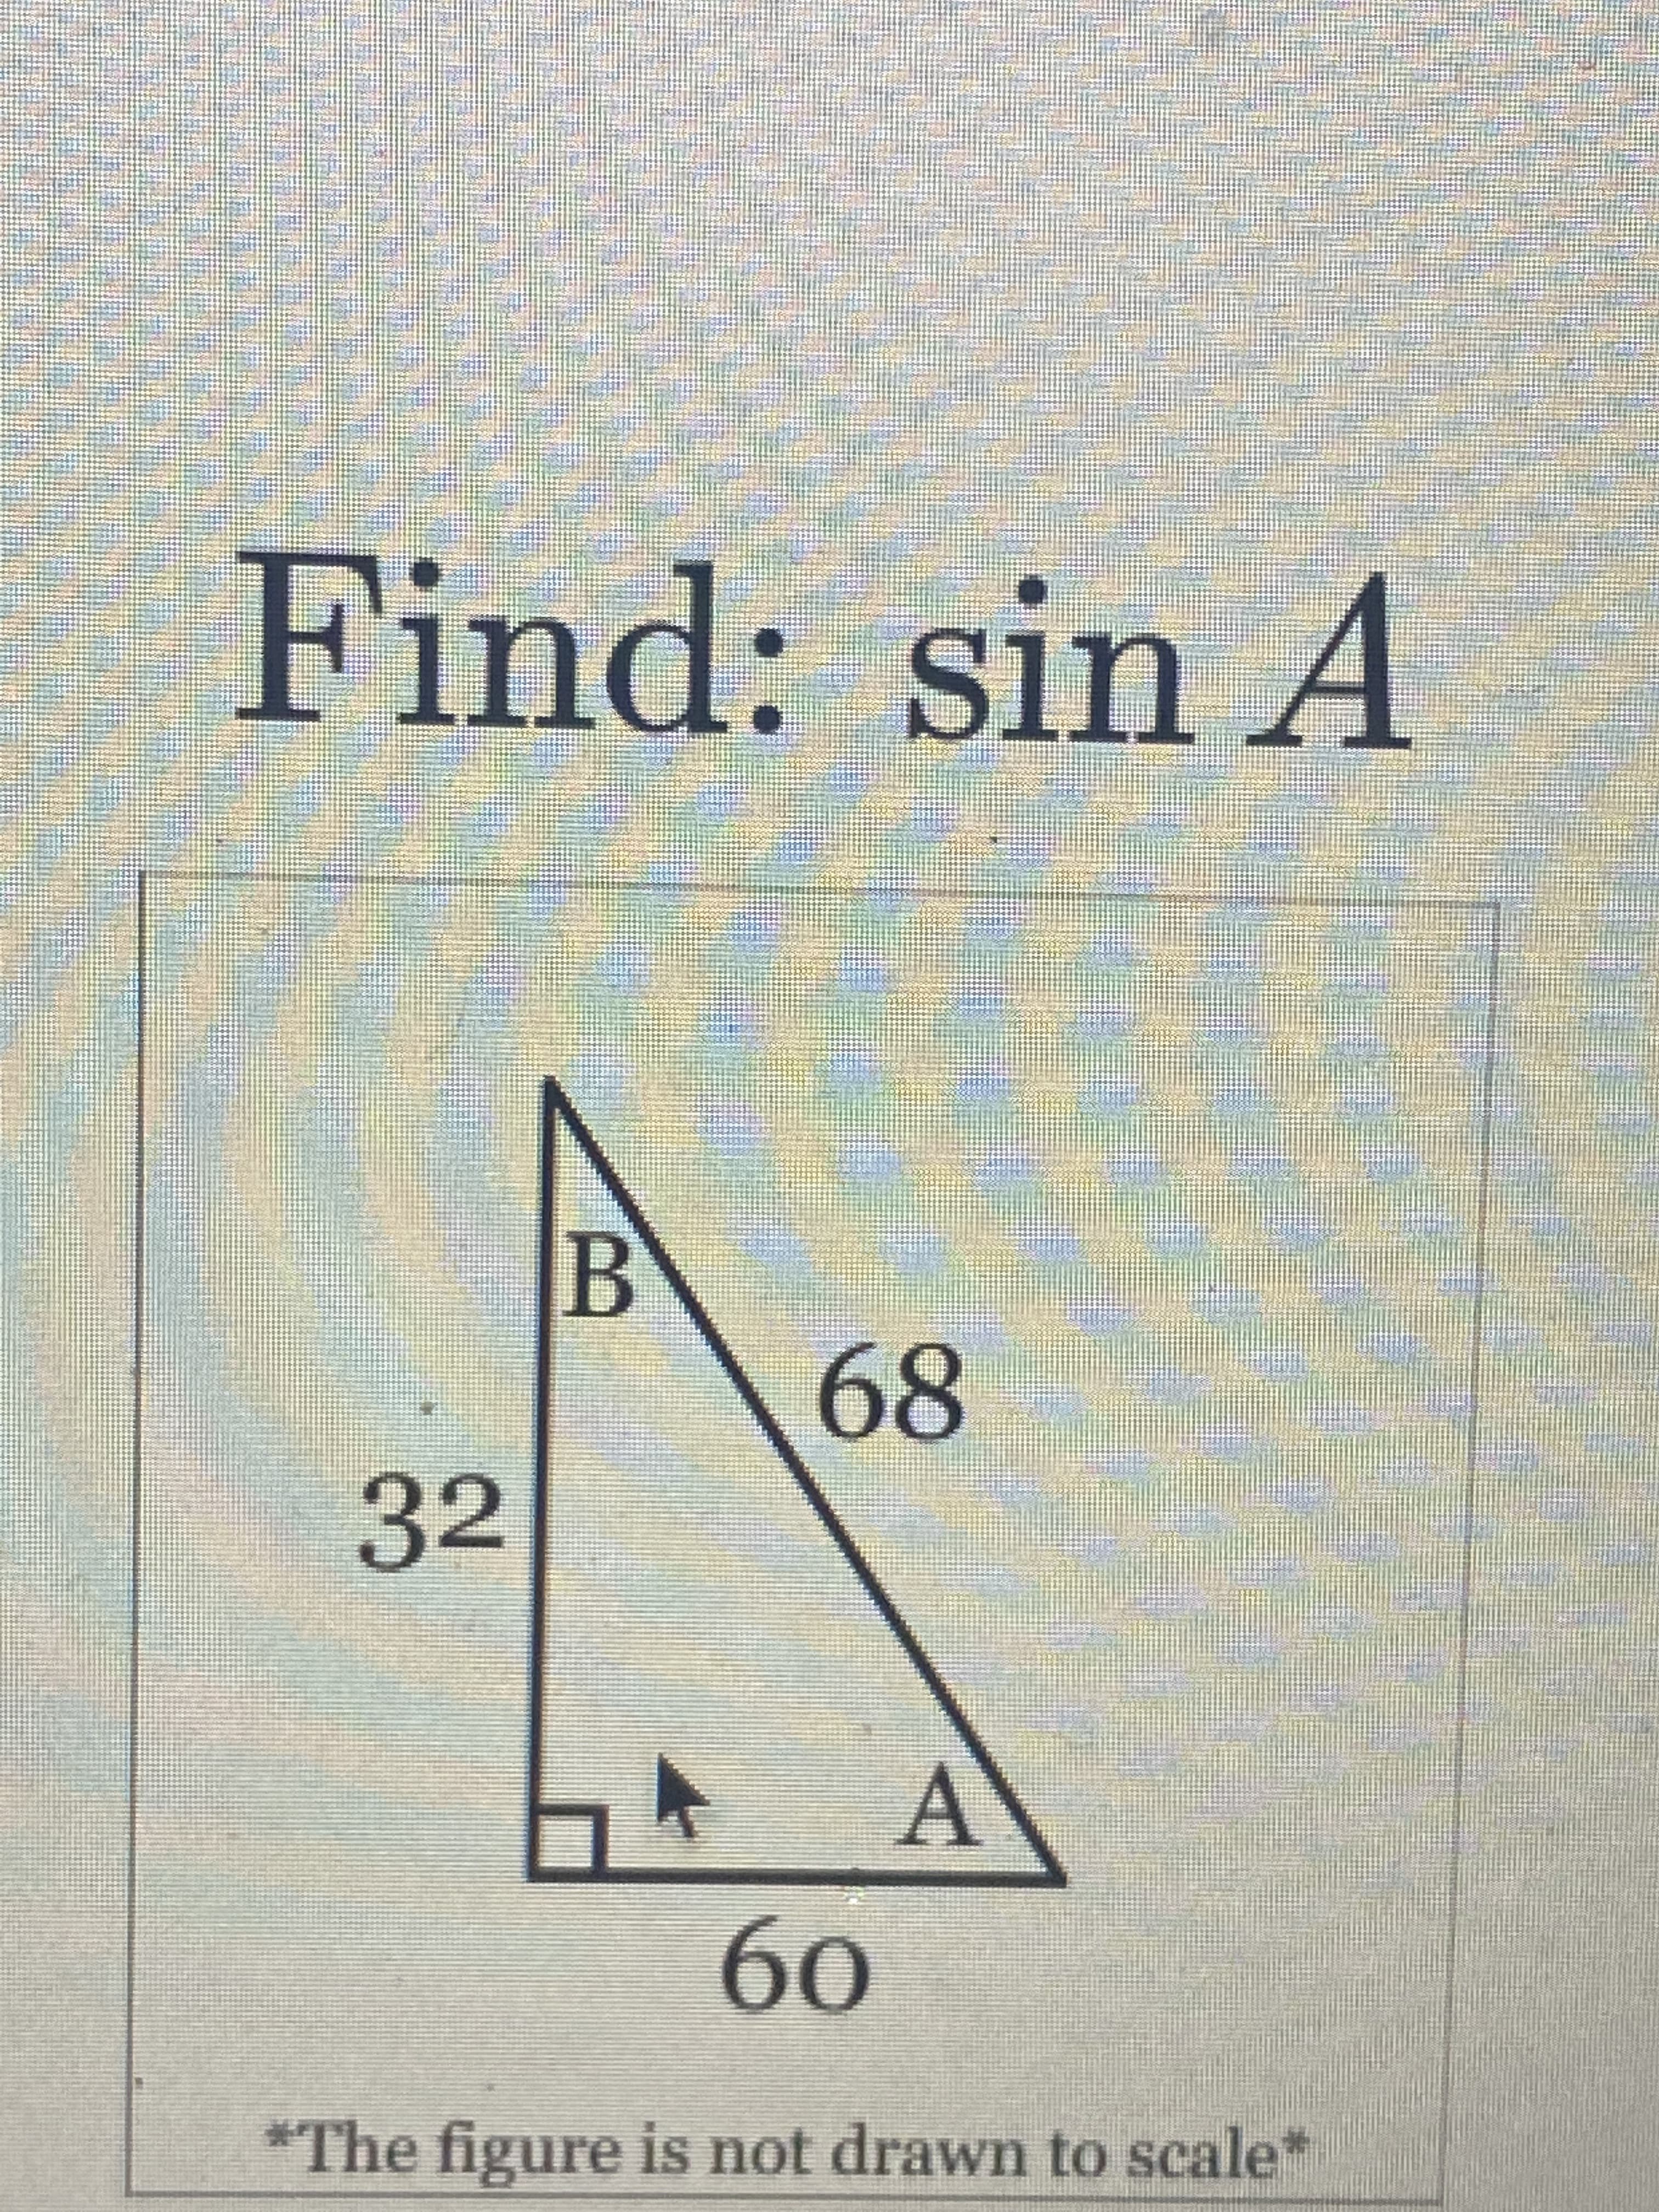 Find: sin A
